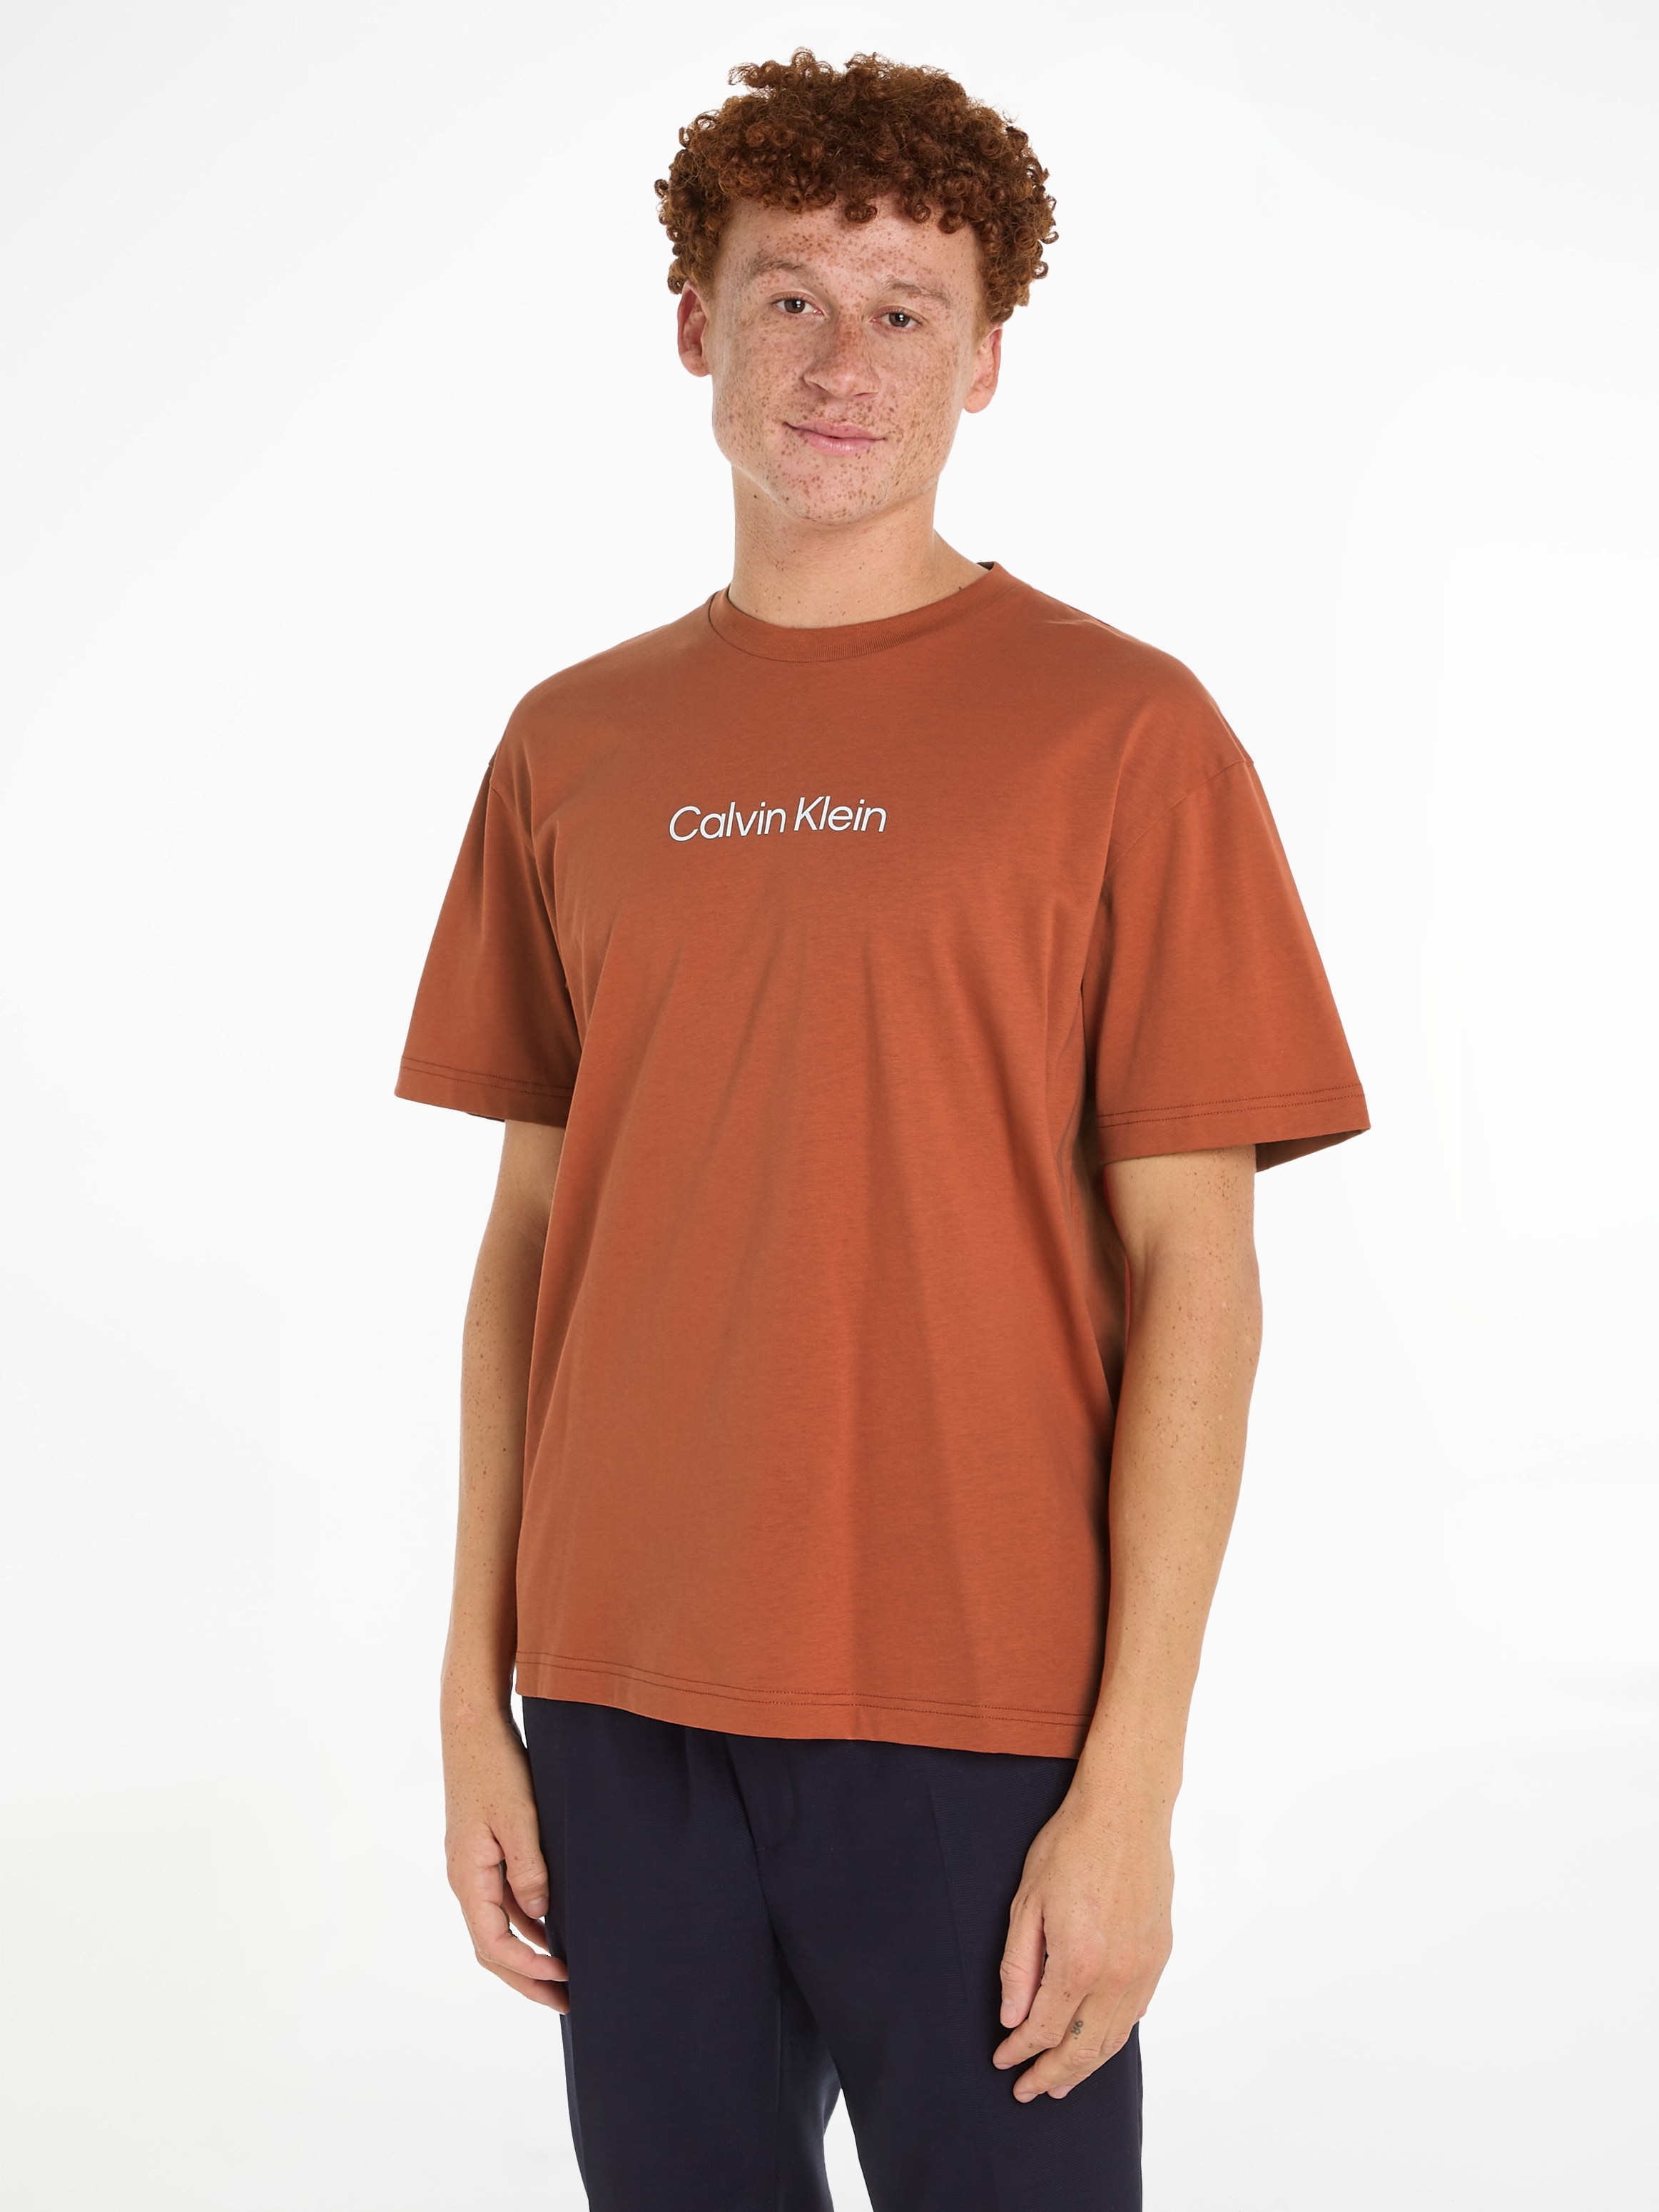 »HERO ♕ Markenlabel LOGO Klein T-SHIRT«, mit Calvin COMFORT T-Shirt bei aufgedrucktem